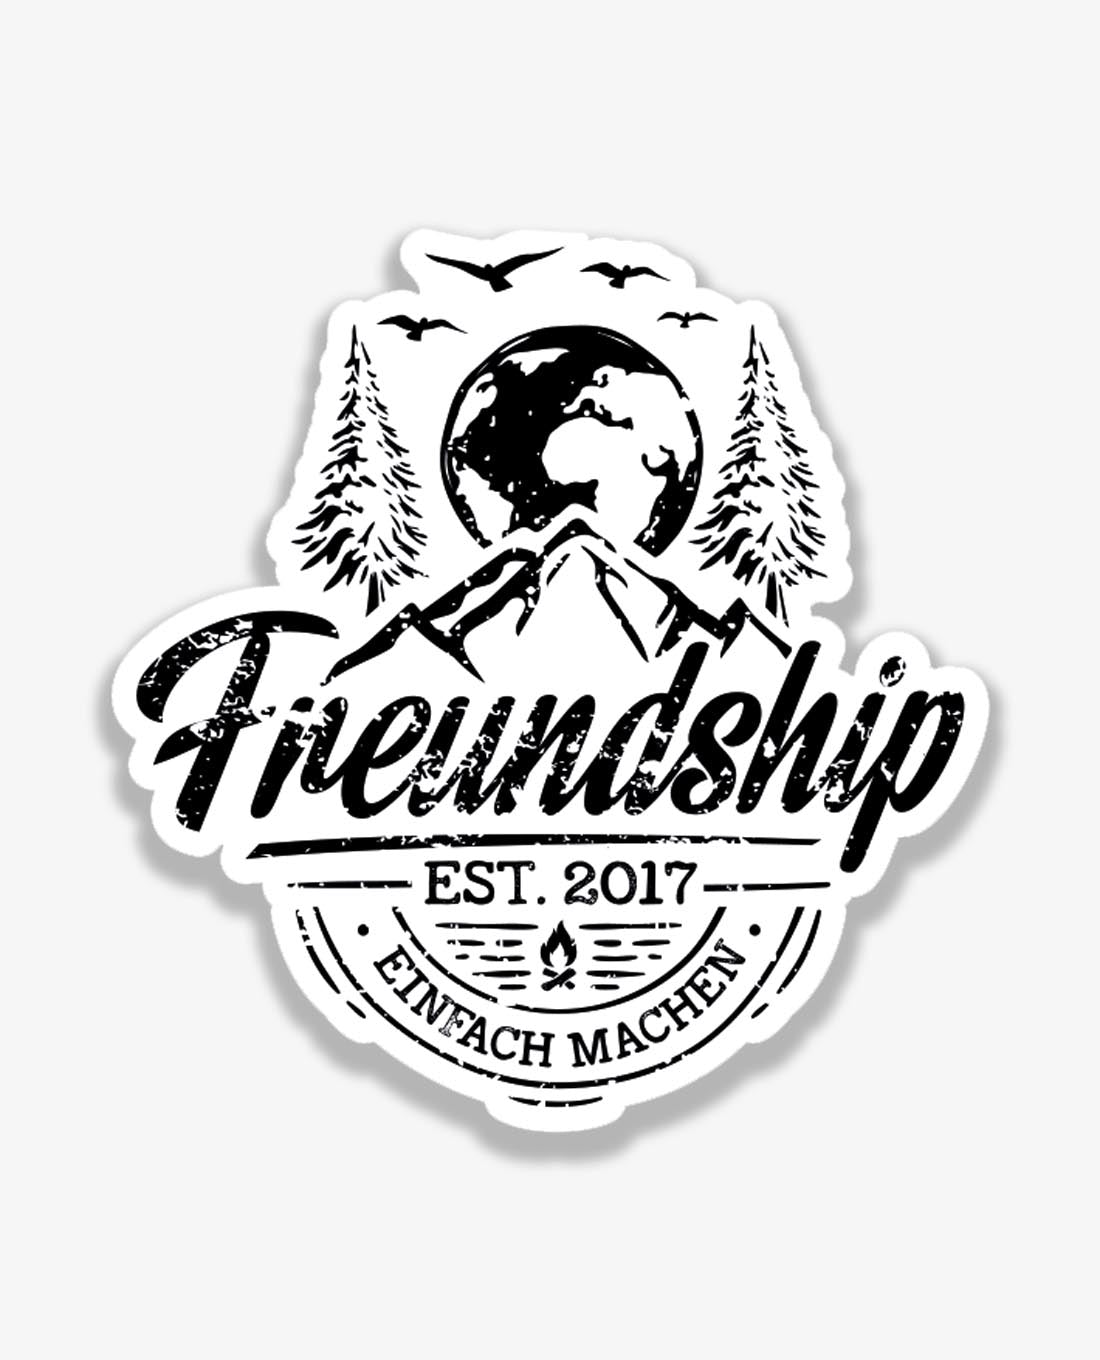 Freundship Sticker "Einfach machen"